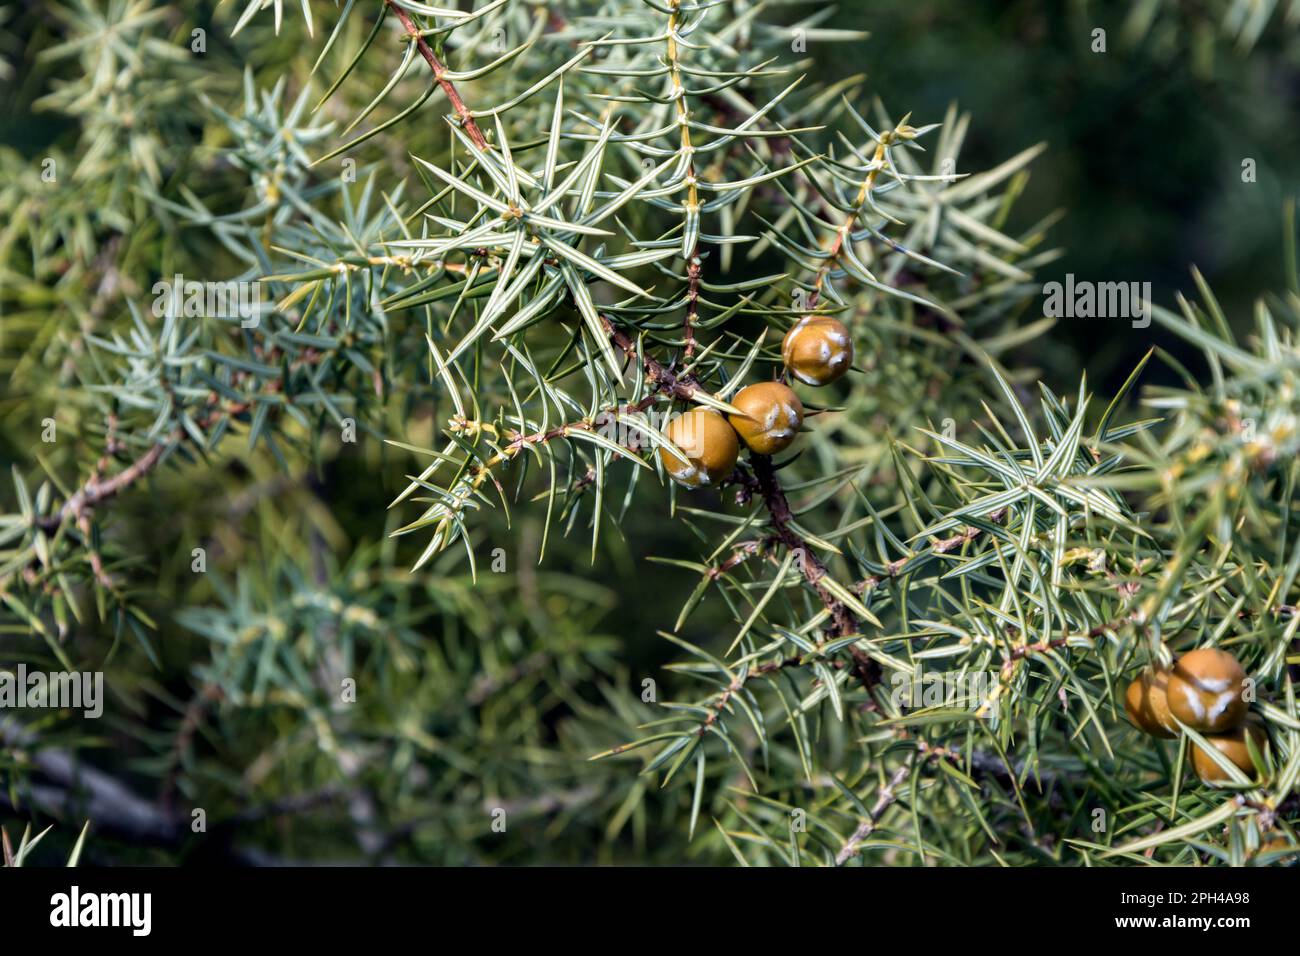 Un primo piano di rami e frutti di Cade (Juniperus oxycedrus). Immagine orizzontale con messa a fuoco selettiva, sfondo sfocato e spazio di copia Foto Stock